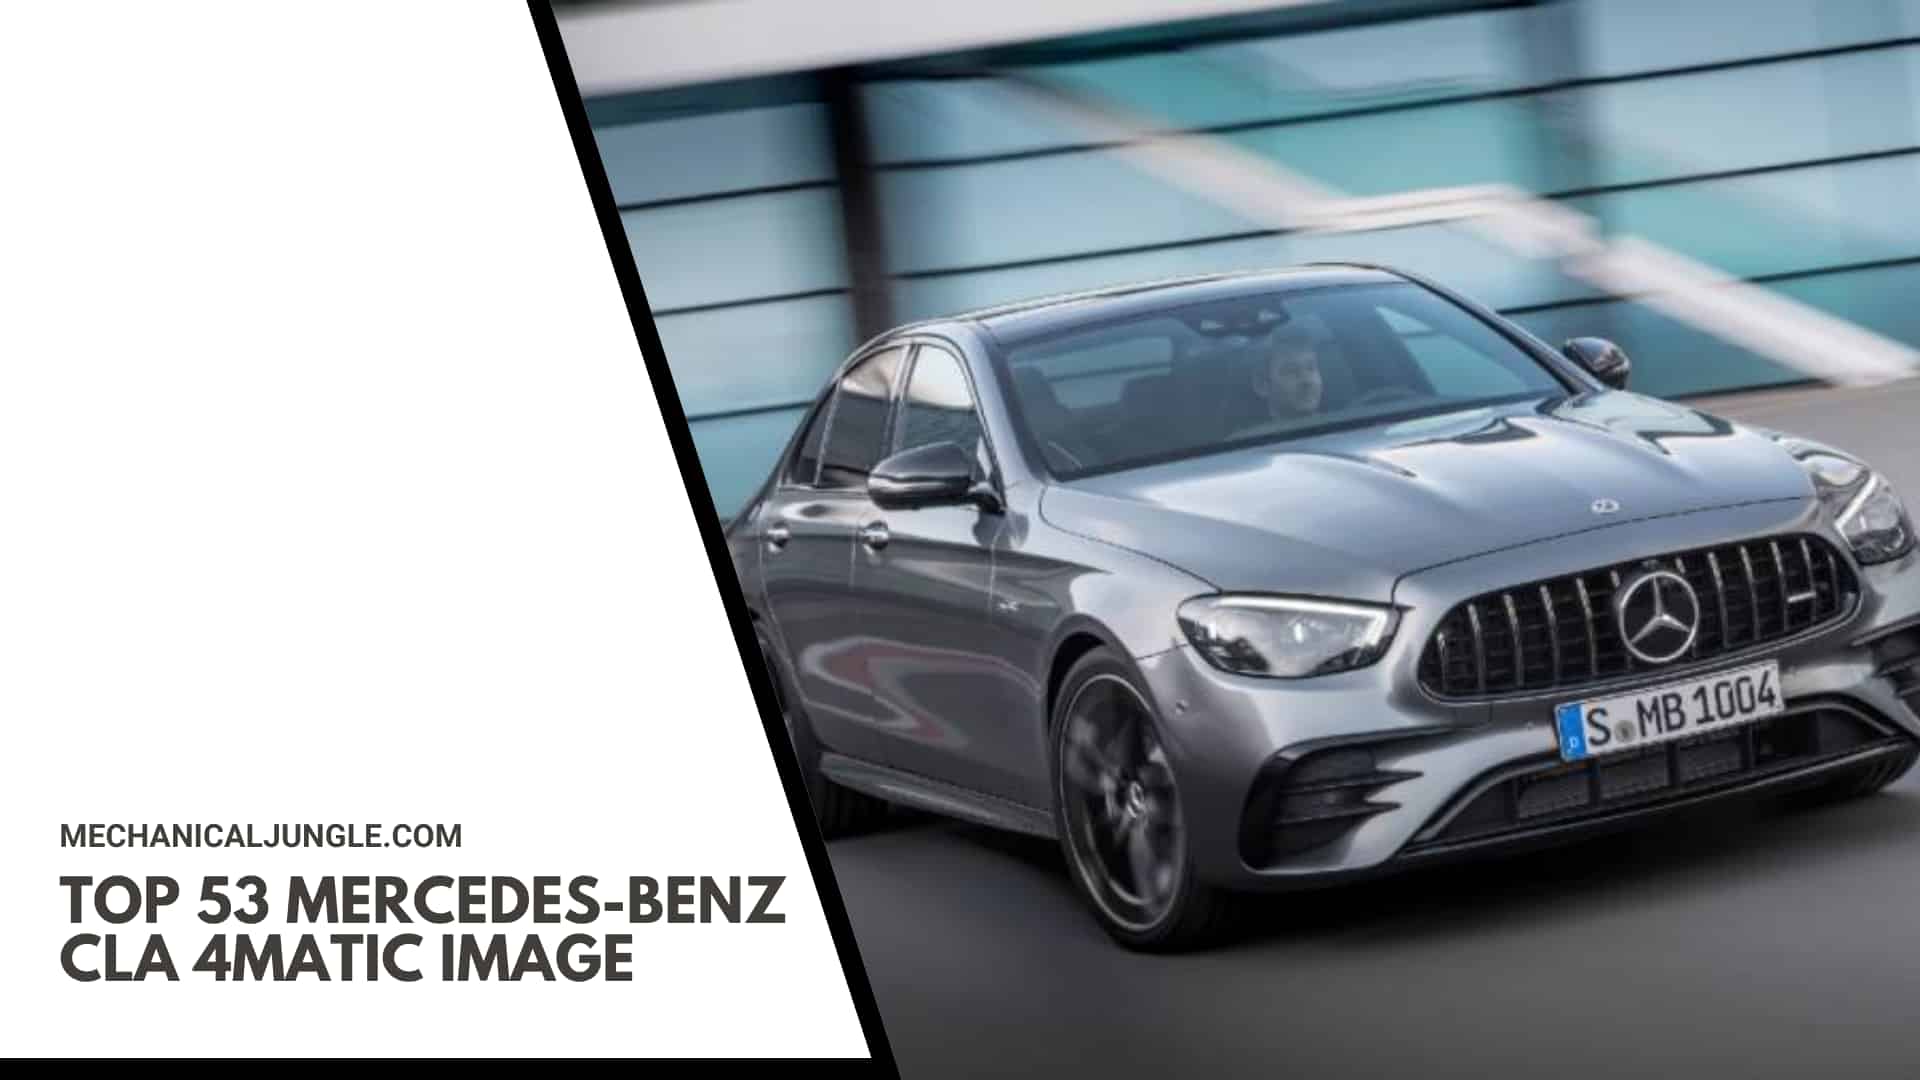 Top 53 Mercedes-Benz CLA 4MATIC Image